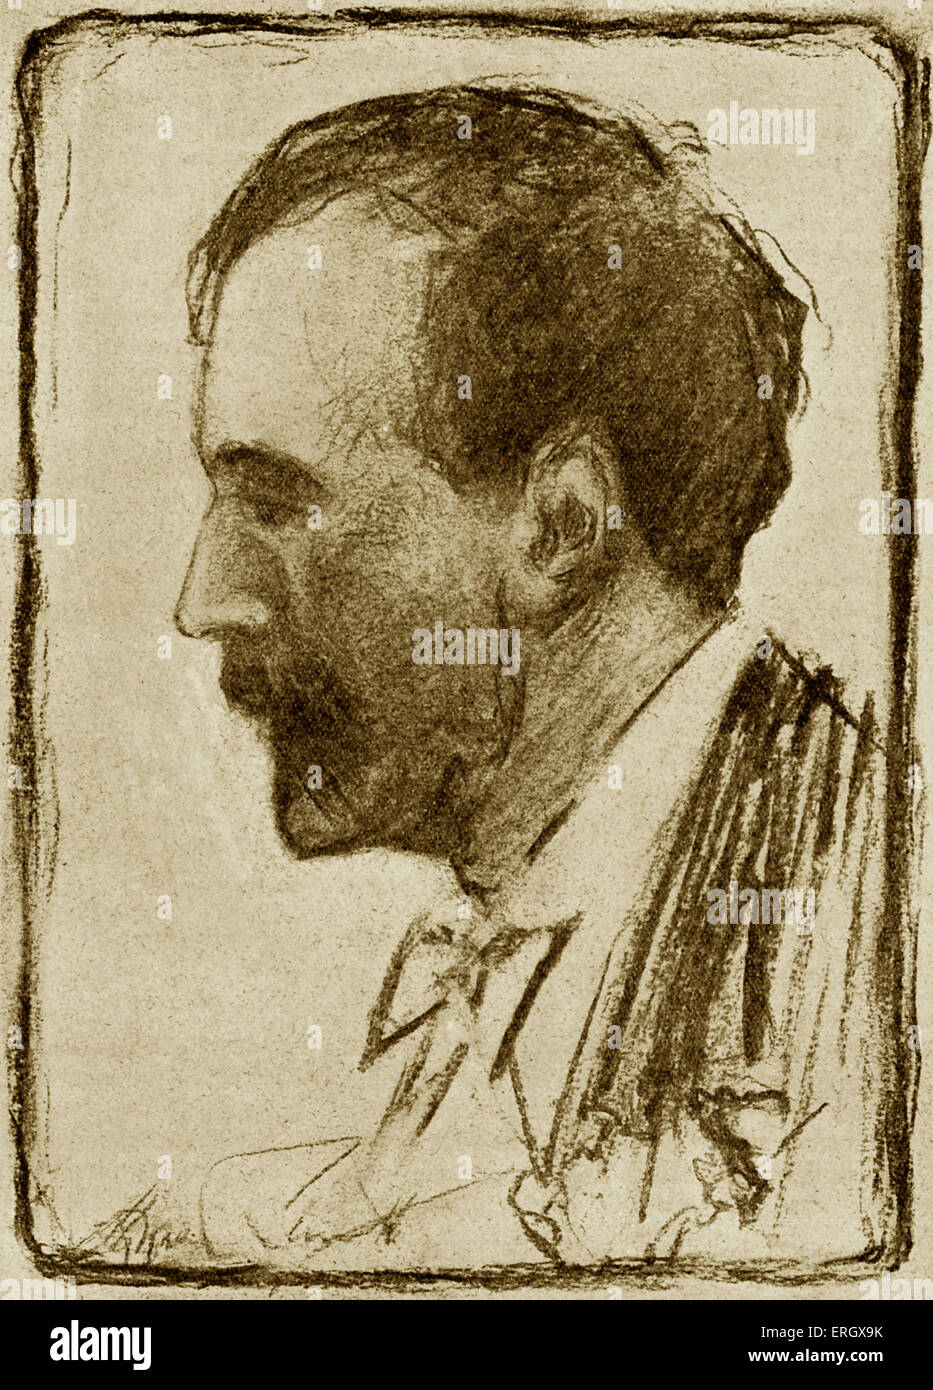 Henry Wood: Britischer Dirigent, 3. März 1869 - 19. August 1944. Illustration von Howard Smith. Stockfoto